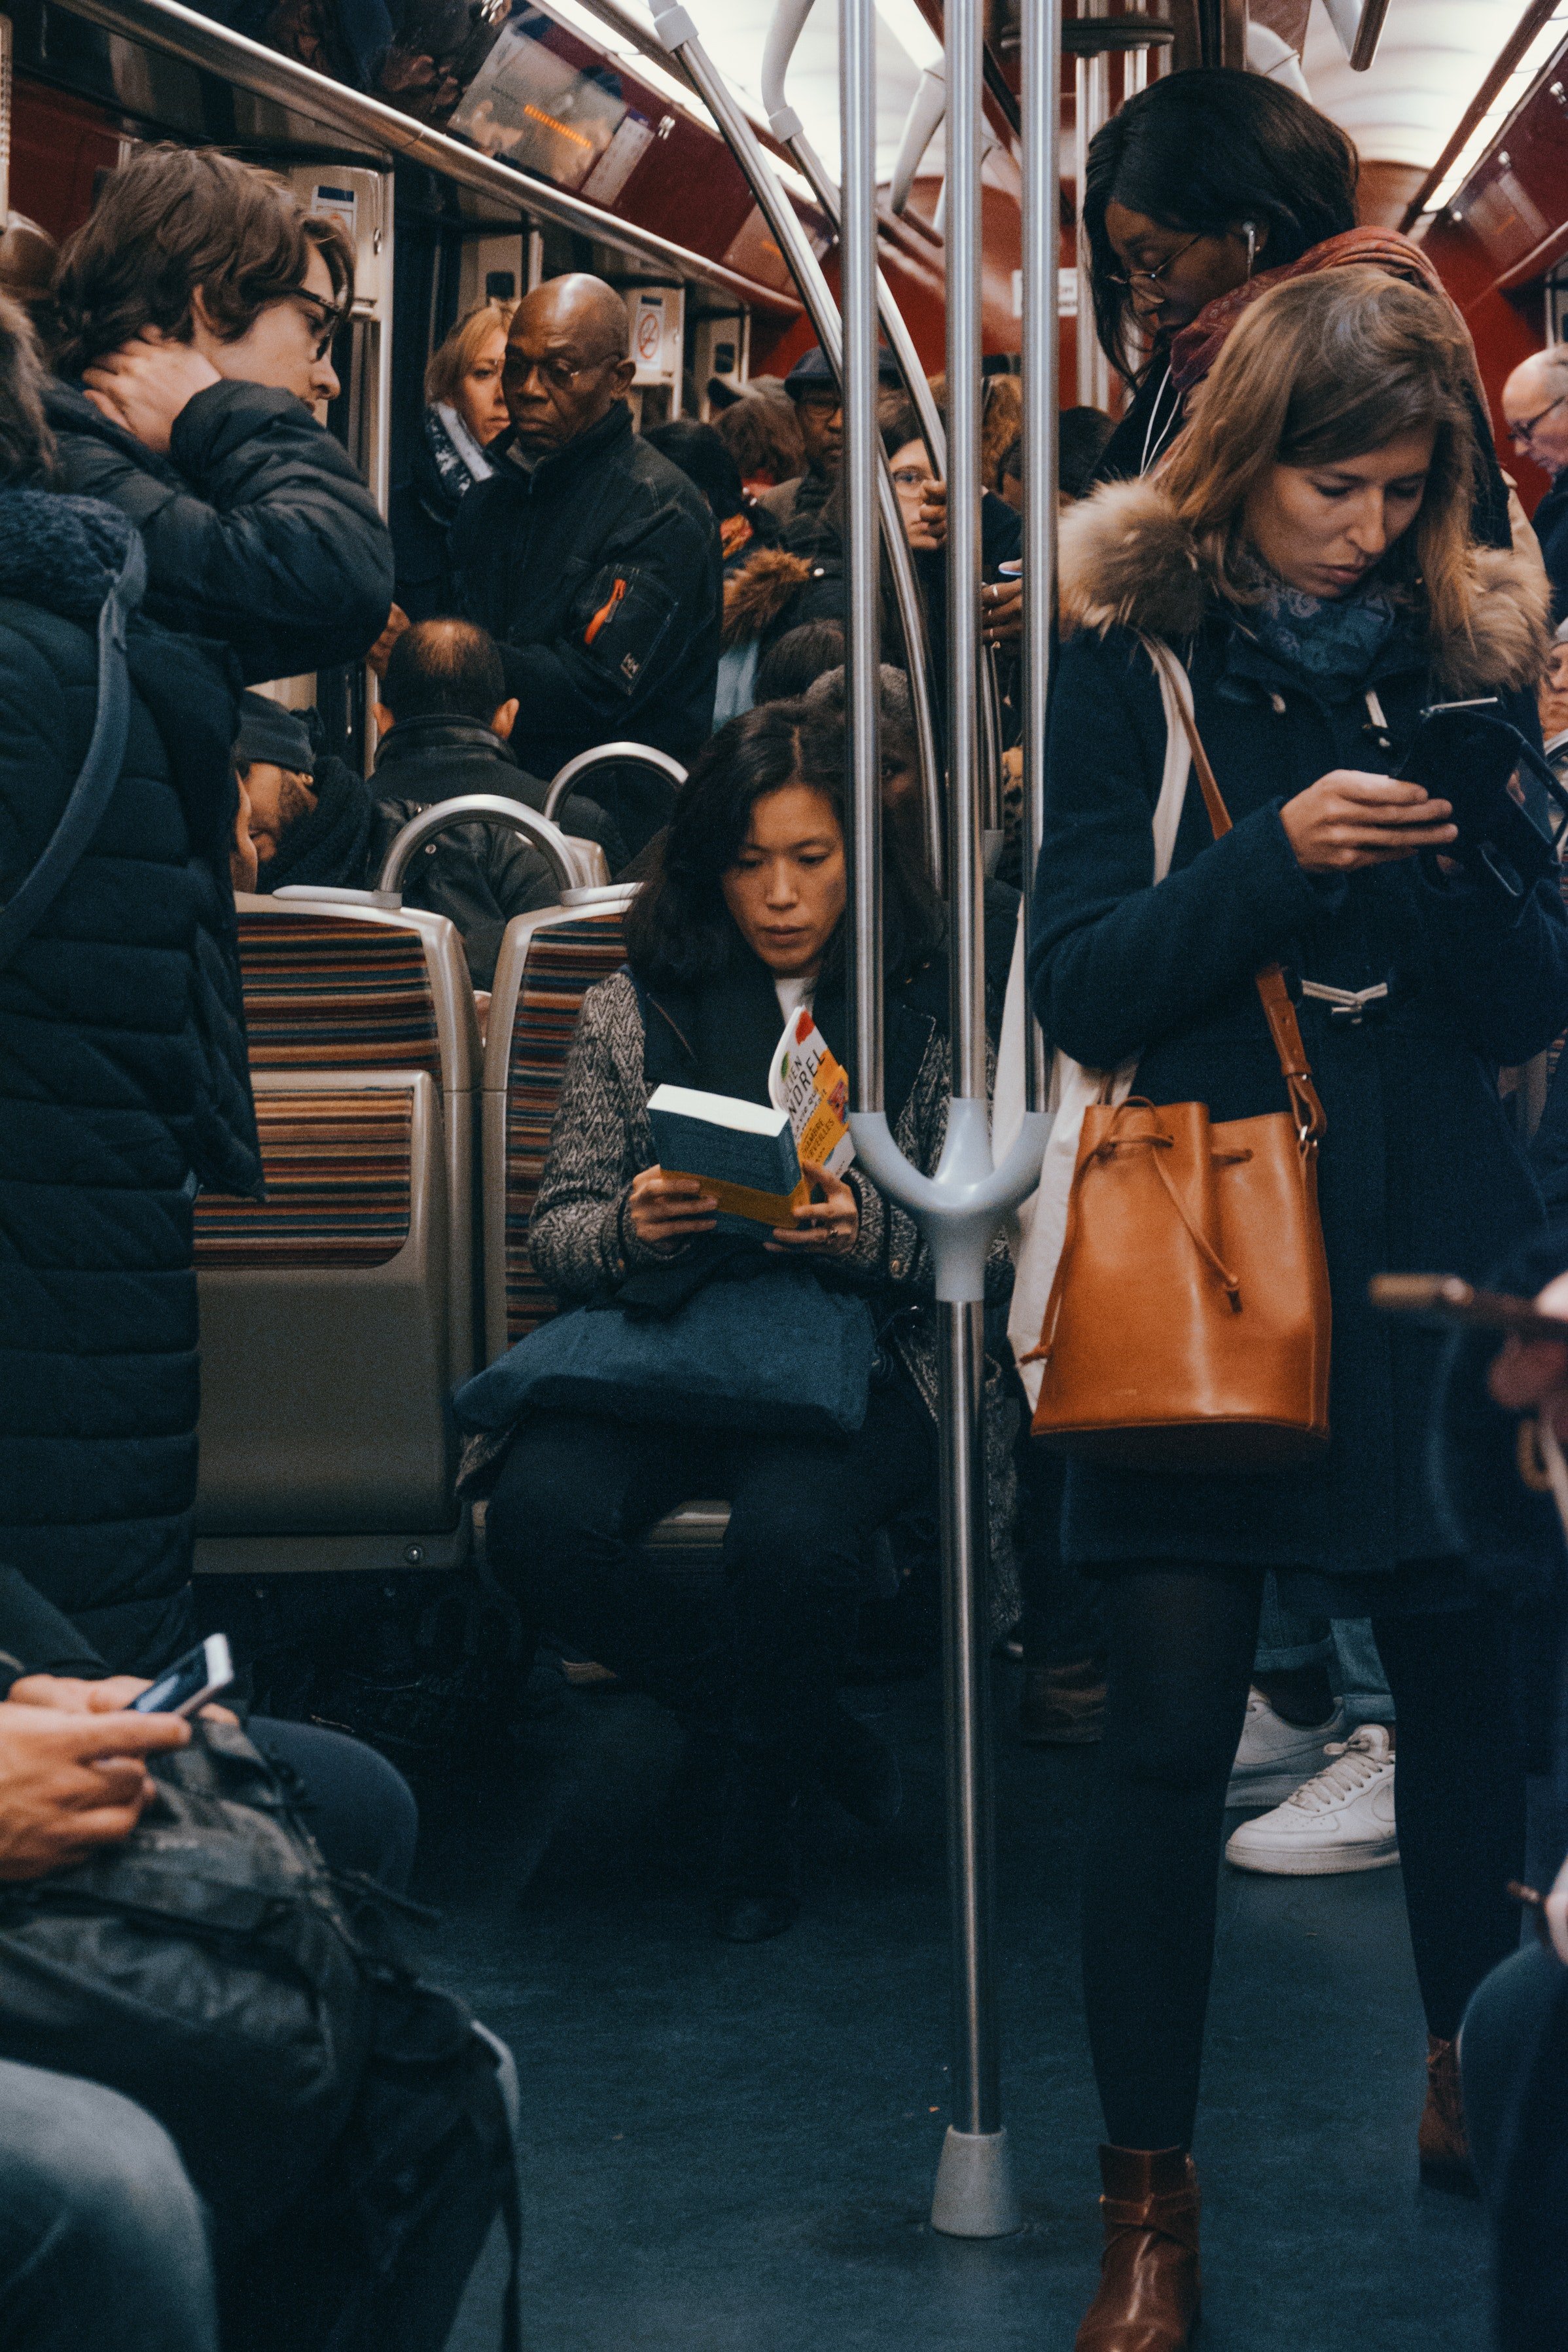 Un vagón del metro lleno de personas. | Foto: Pexels